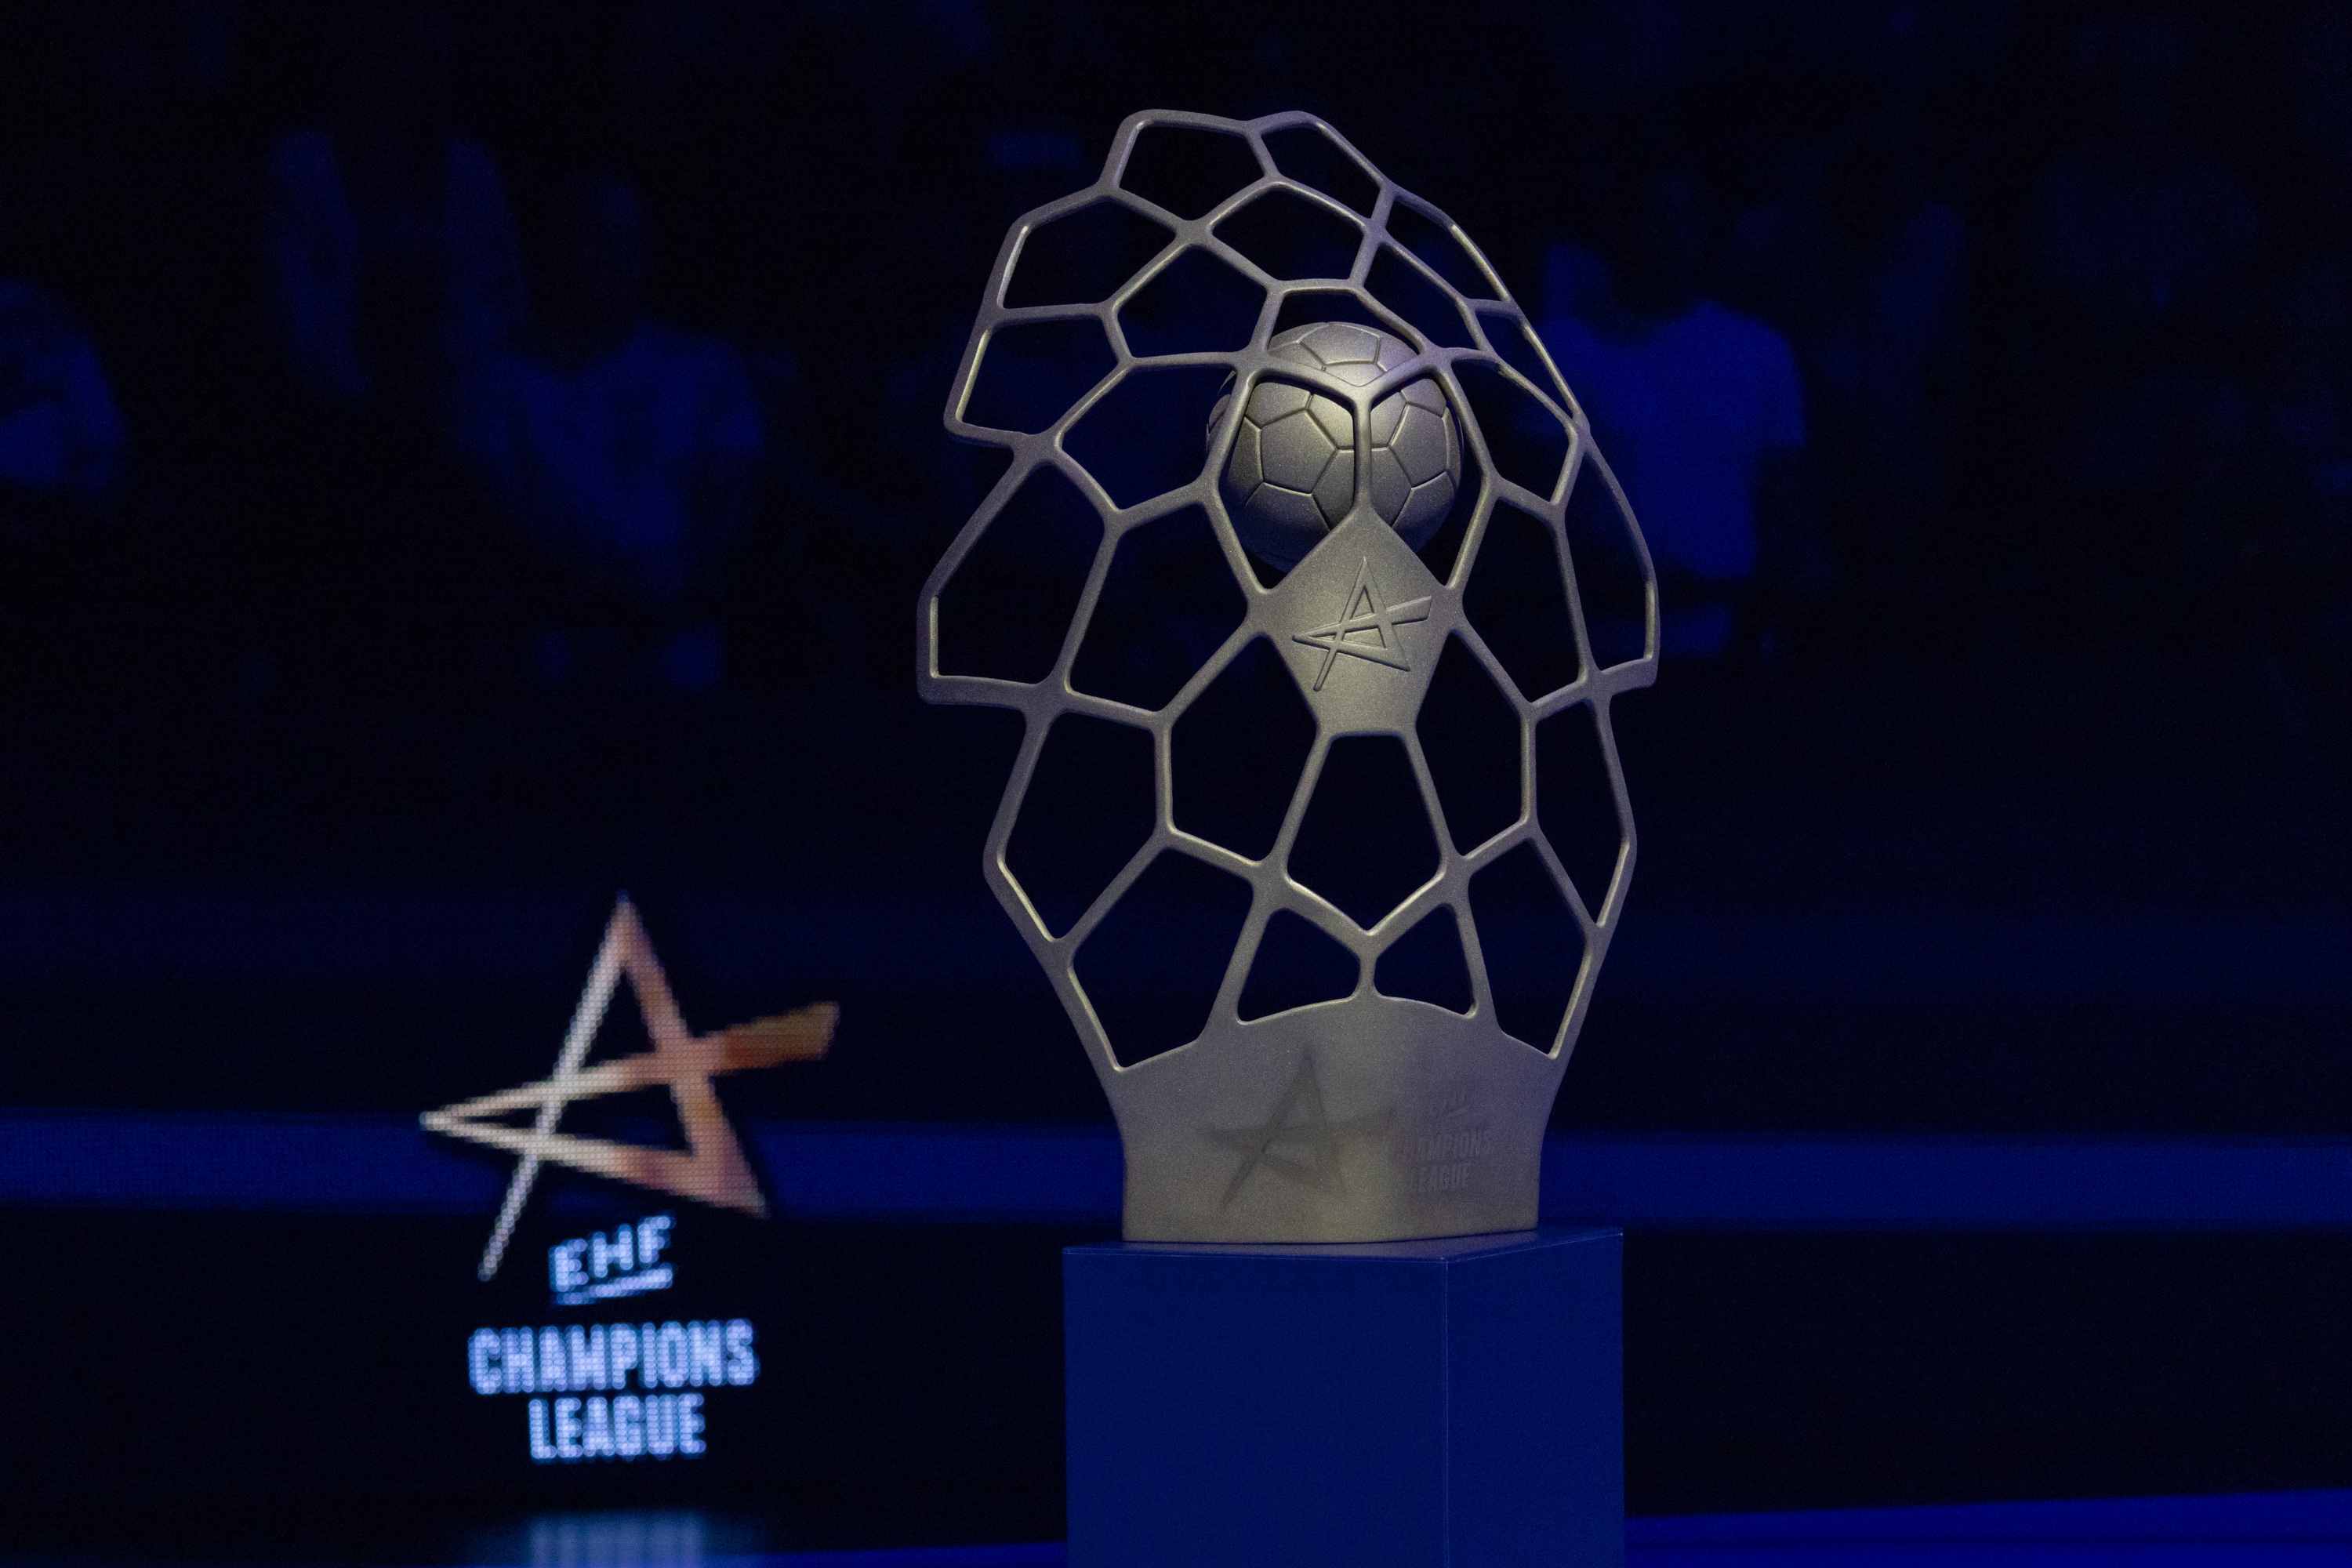 S-a decis finala! Bietigheim - Gyor, în ultimul act al EHF Champions League. Metz și Esbjerg, eliminate în semifinale